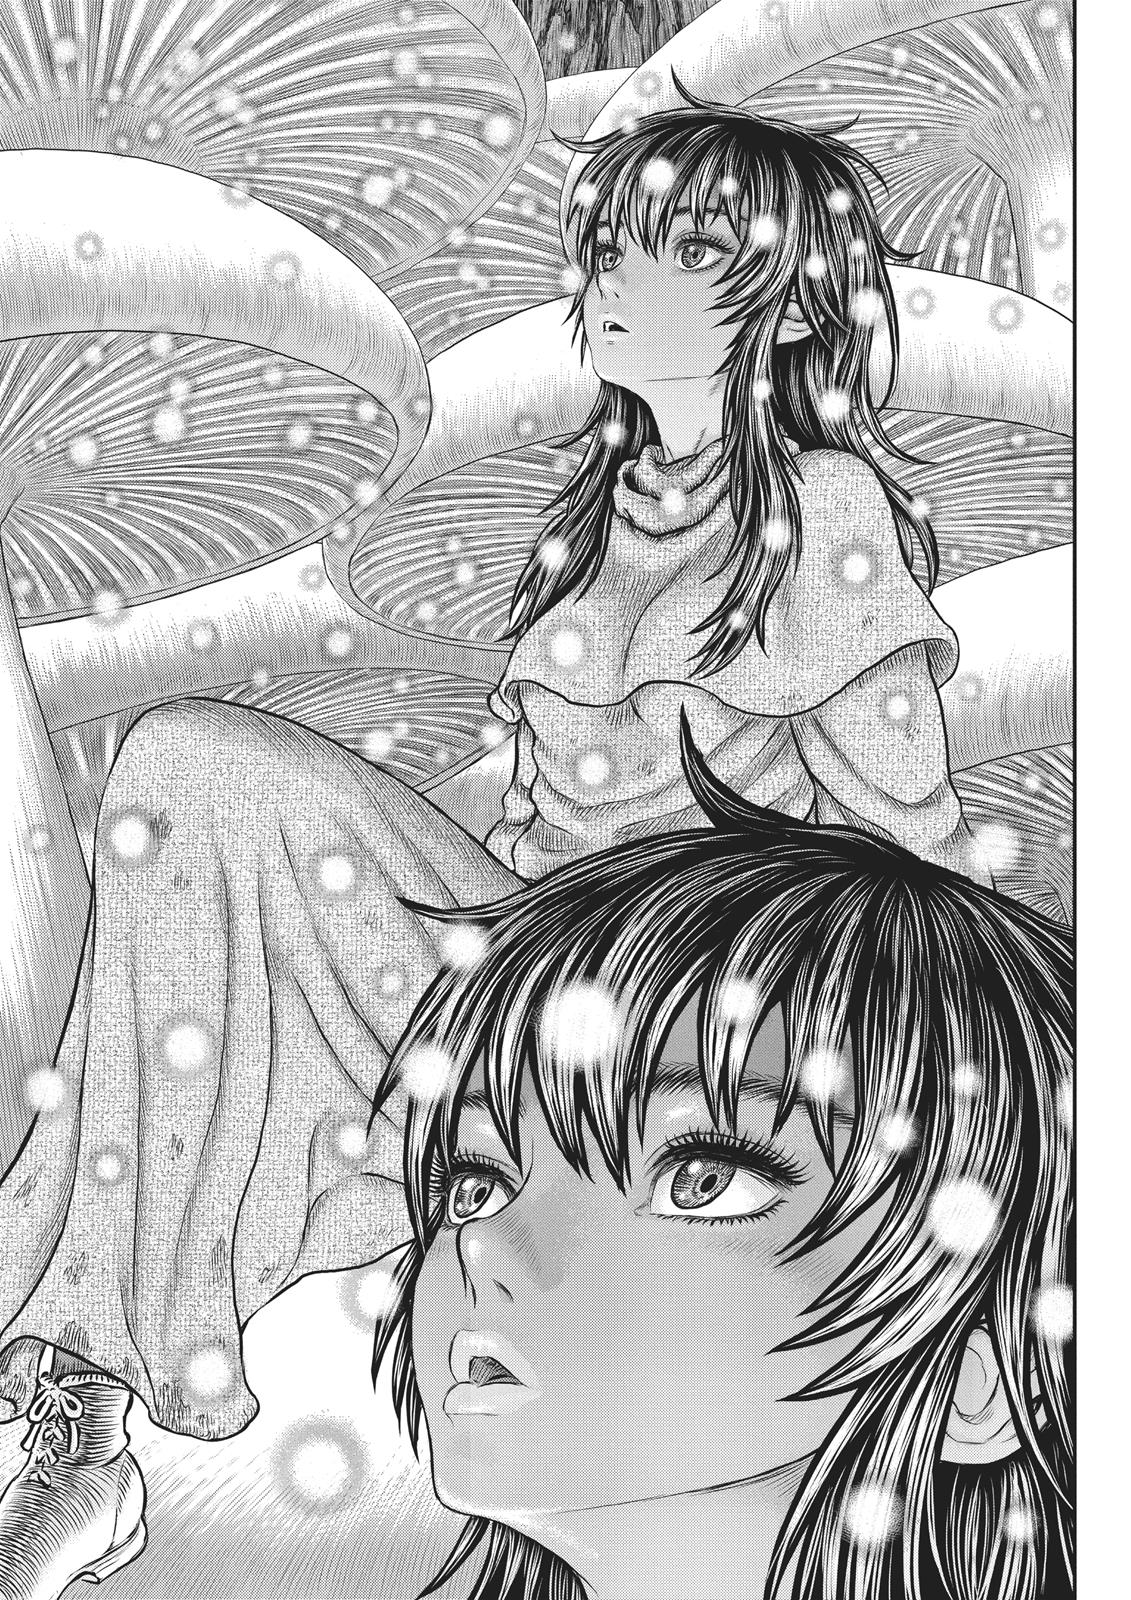 Berserk Manga Chapter 355 image 01